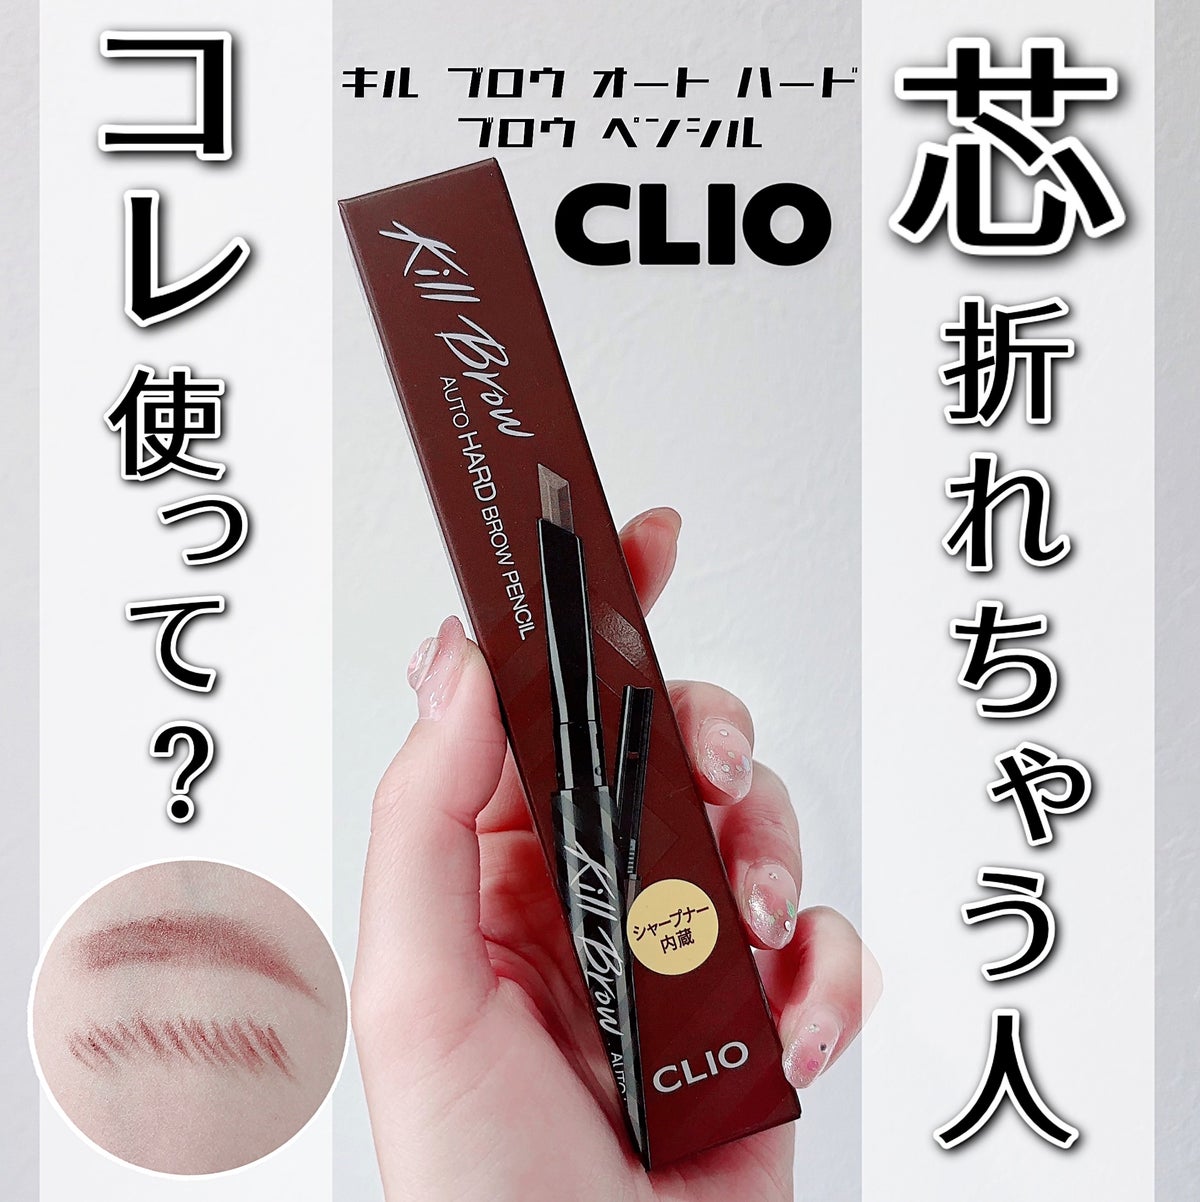 キル ブロウ オート ハード ブロウ ペンシル/CLIO/アイブロウペンシルを使ったクチコミ（1枚目）